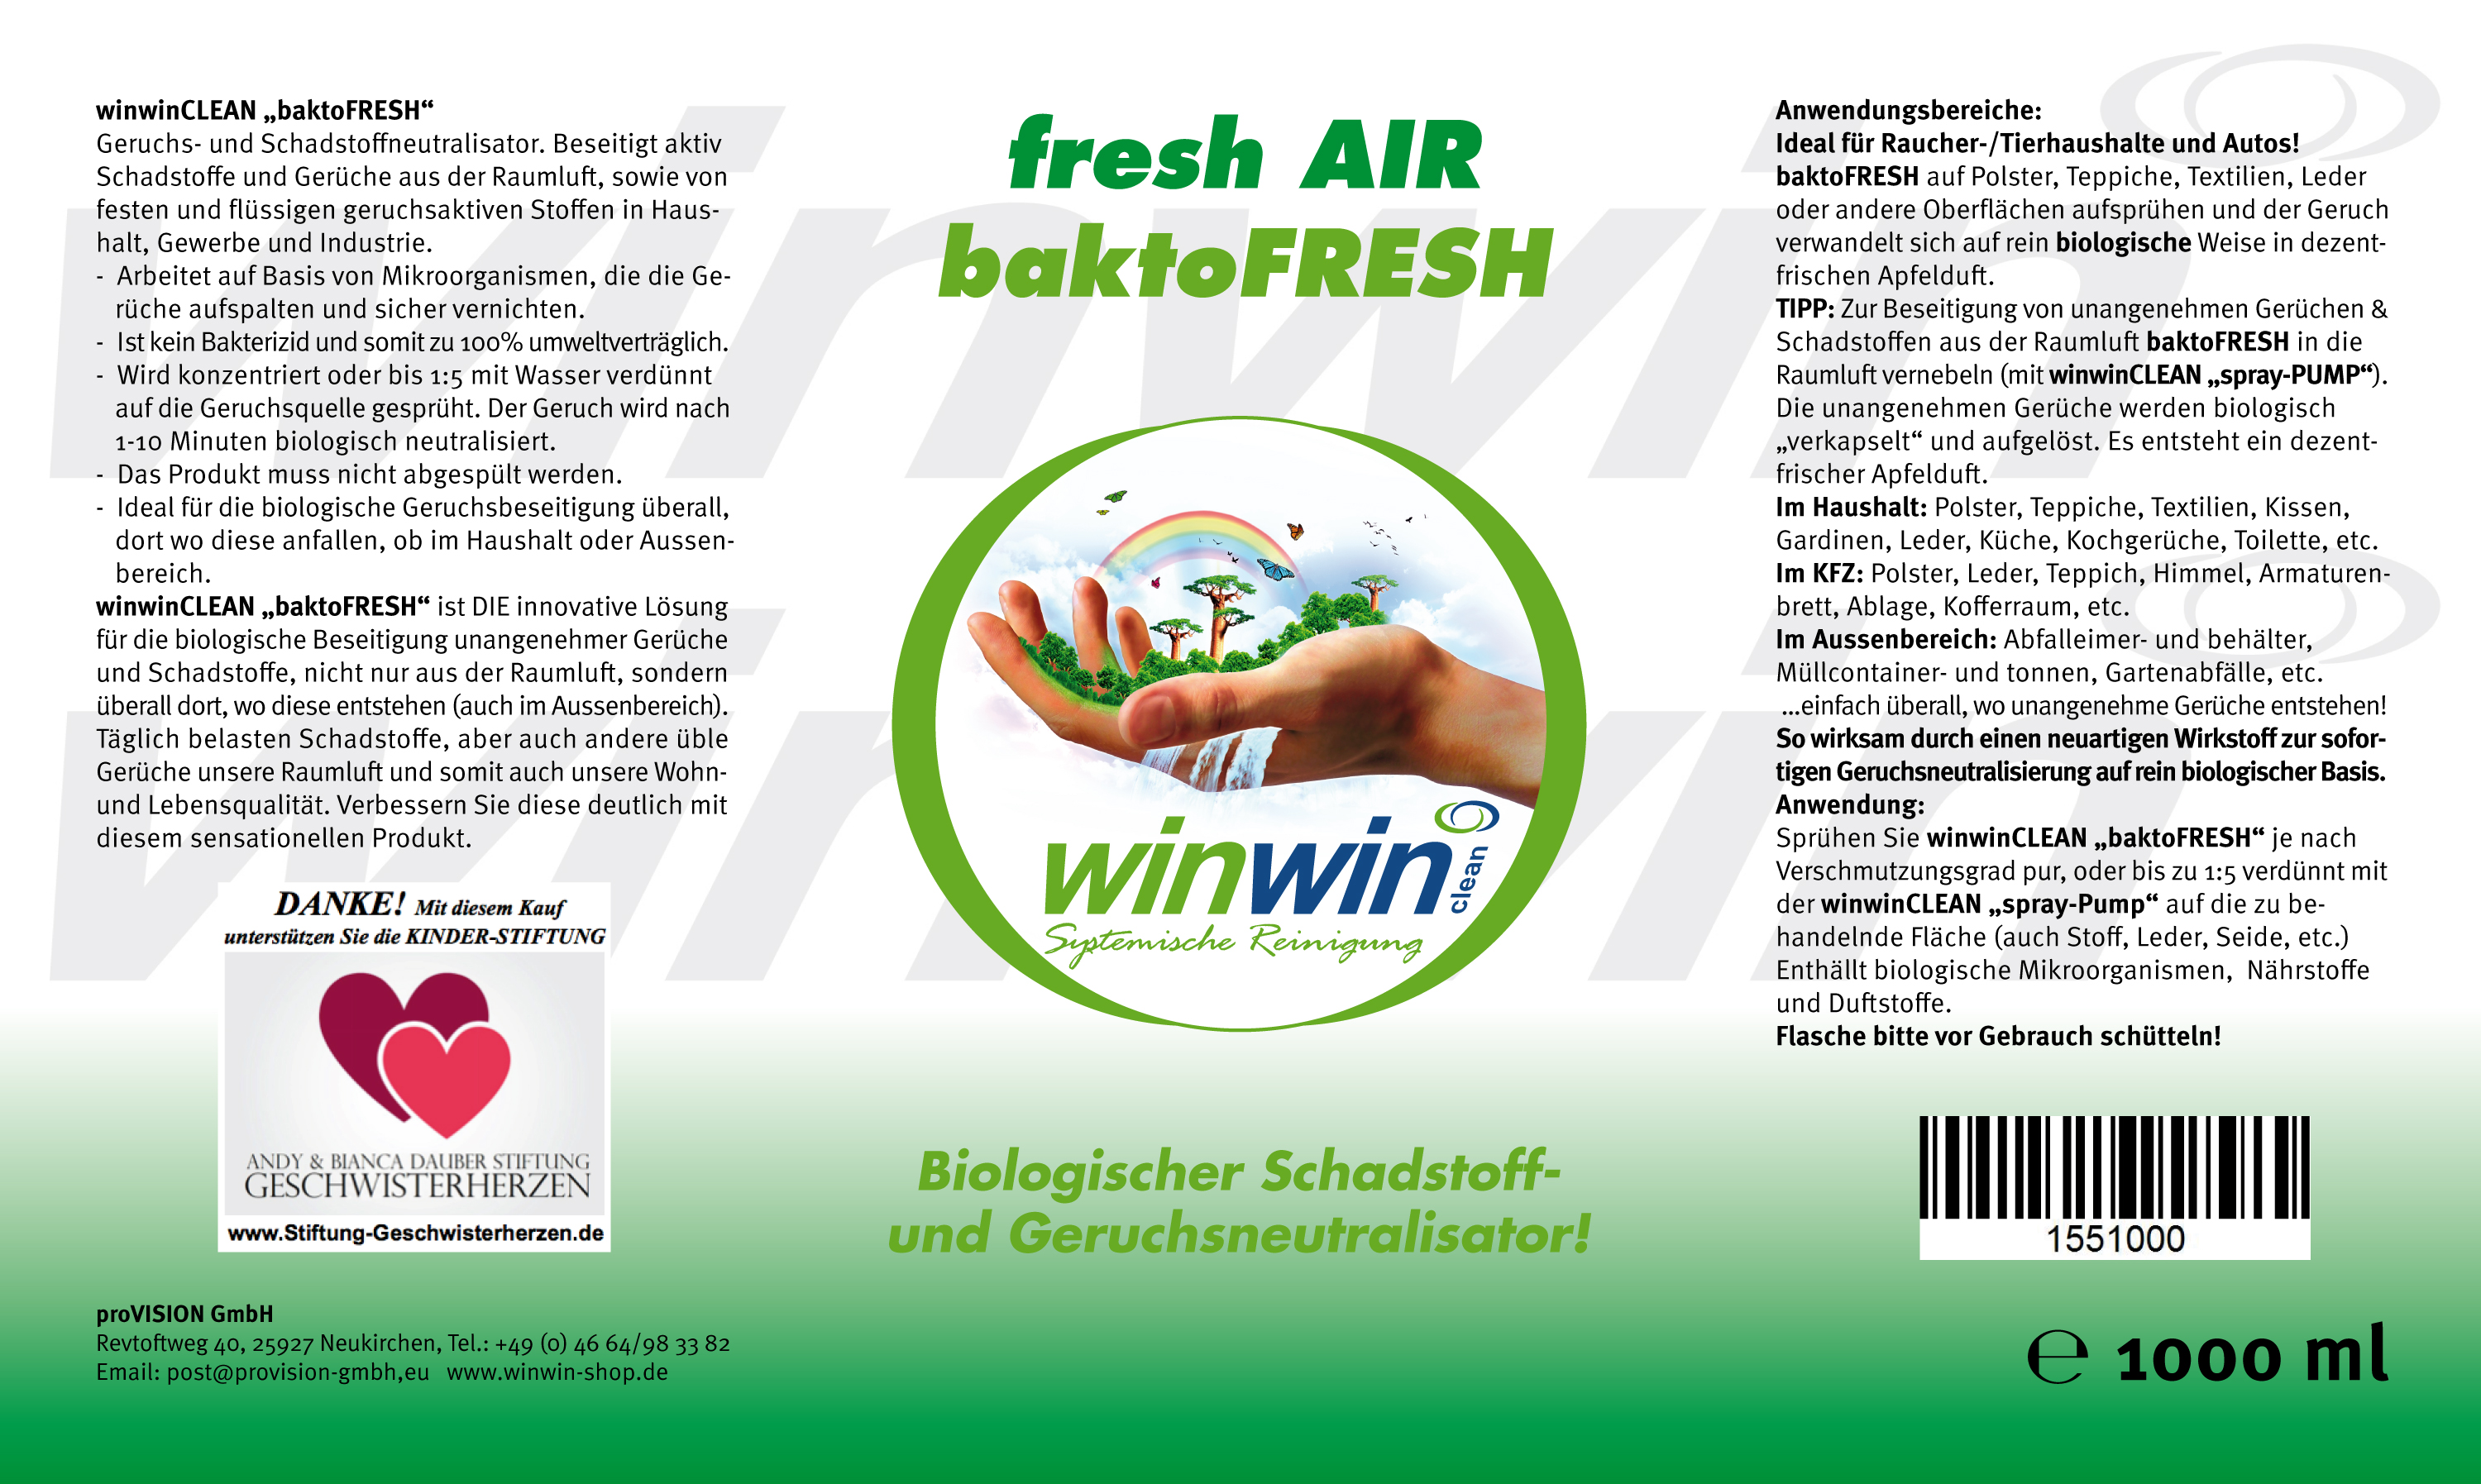 baktoFRESH 1000ml BIOLOGISCHER Schadstoff- & Geruchsneutralisator, 21,90 €